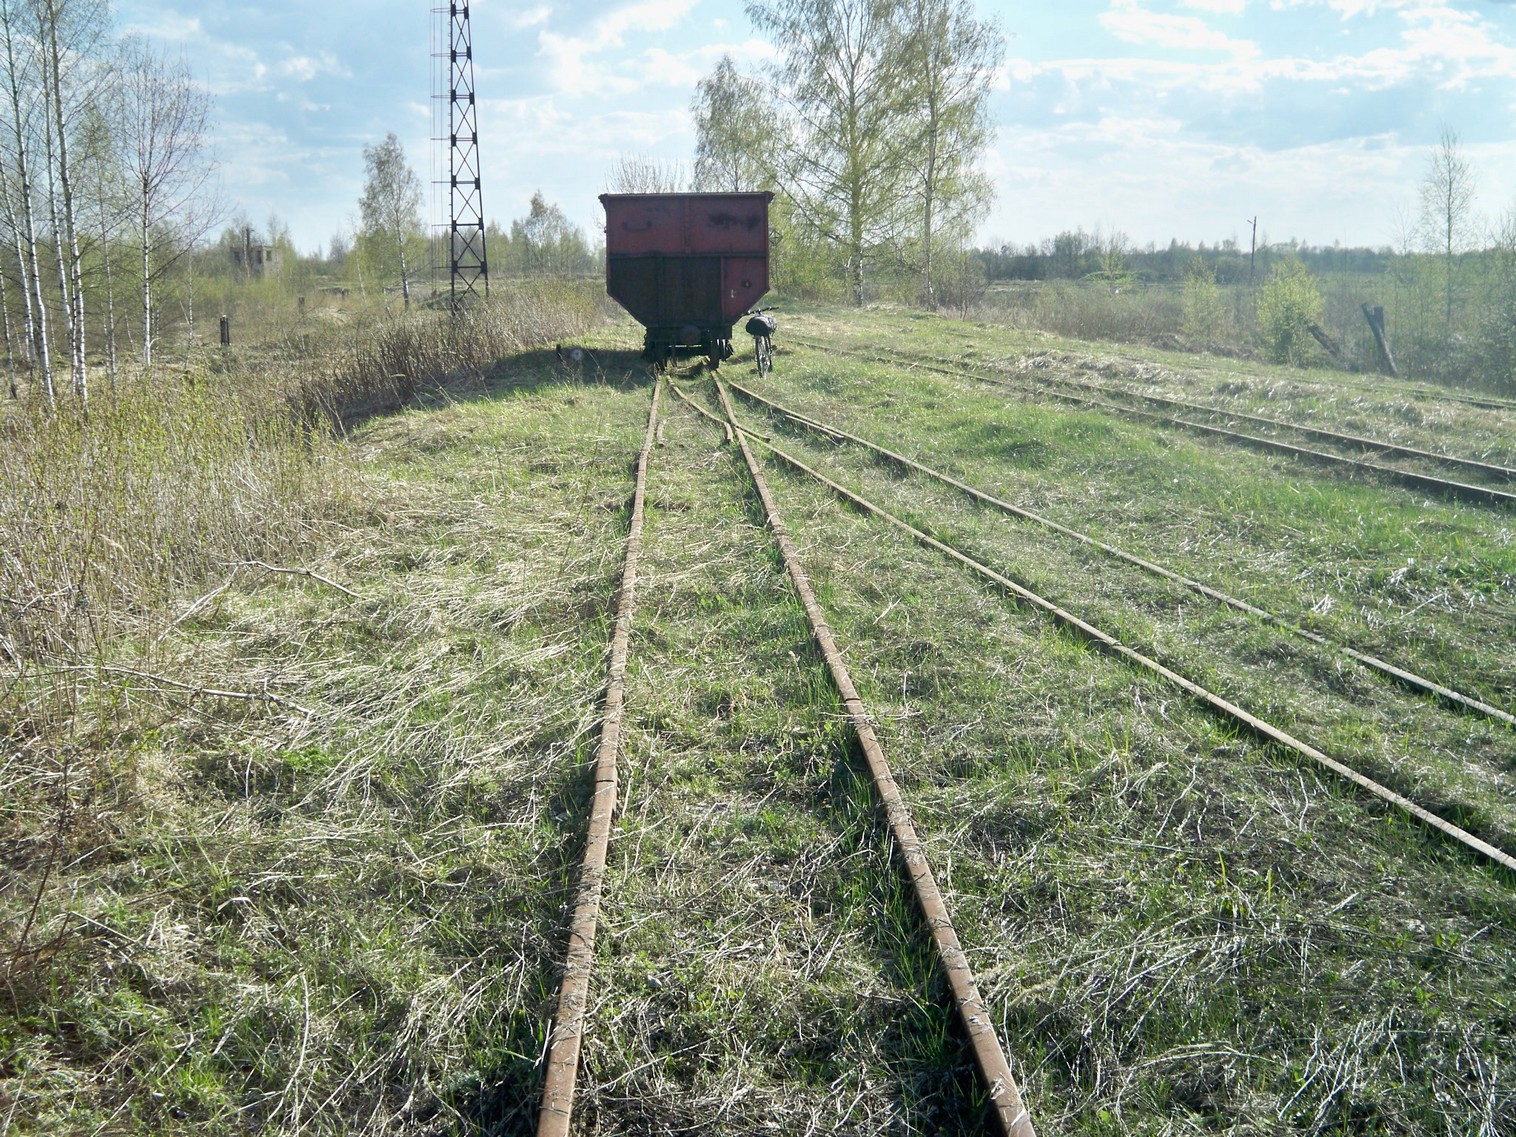 Узкоколейная железная дорога Васильевского предприятия промышленного железнодорожного транспорта  — фотографии, сделанные в 2014 году (часть 8)